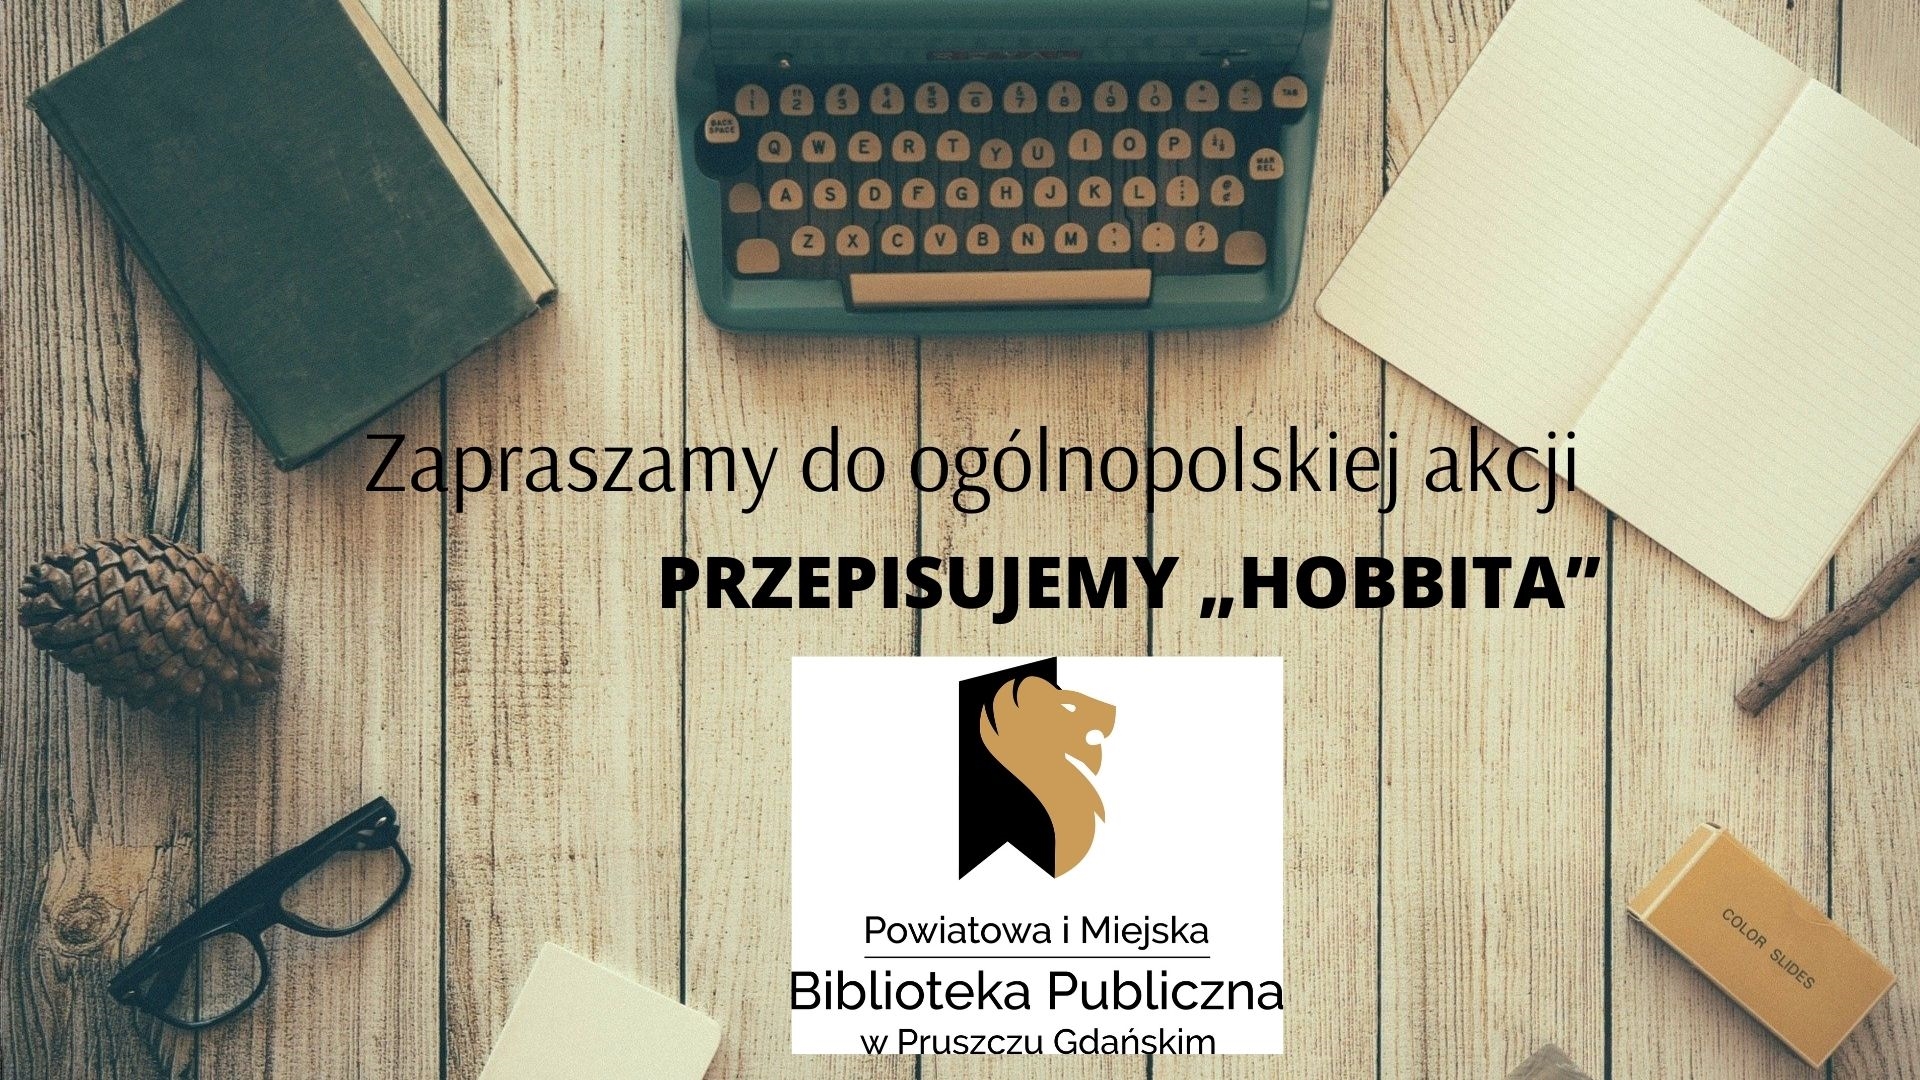 Zdjęcie przedstawiające tekst: Zapraszamy do ogólnopolskiej akcji ,,Przepisujemy Hobbita".; Powiatowa i Miejska Biblioteka Publiczna w Pruszczu Gdańskim.Na fotografii okulary, maszyna do pisania, zamknięta książka, otwarty zeszyt.